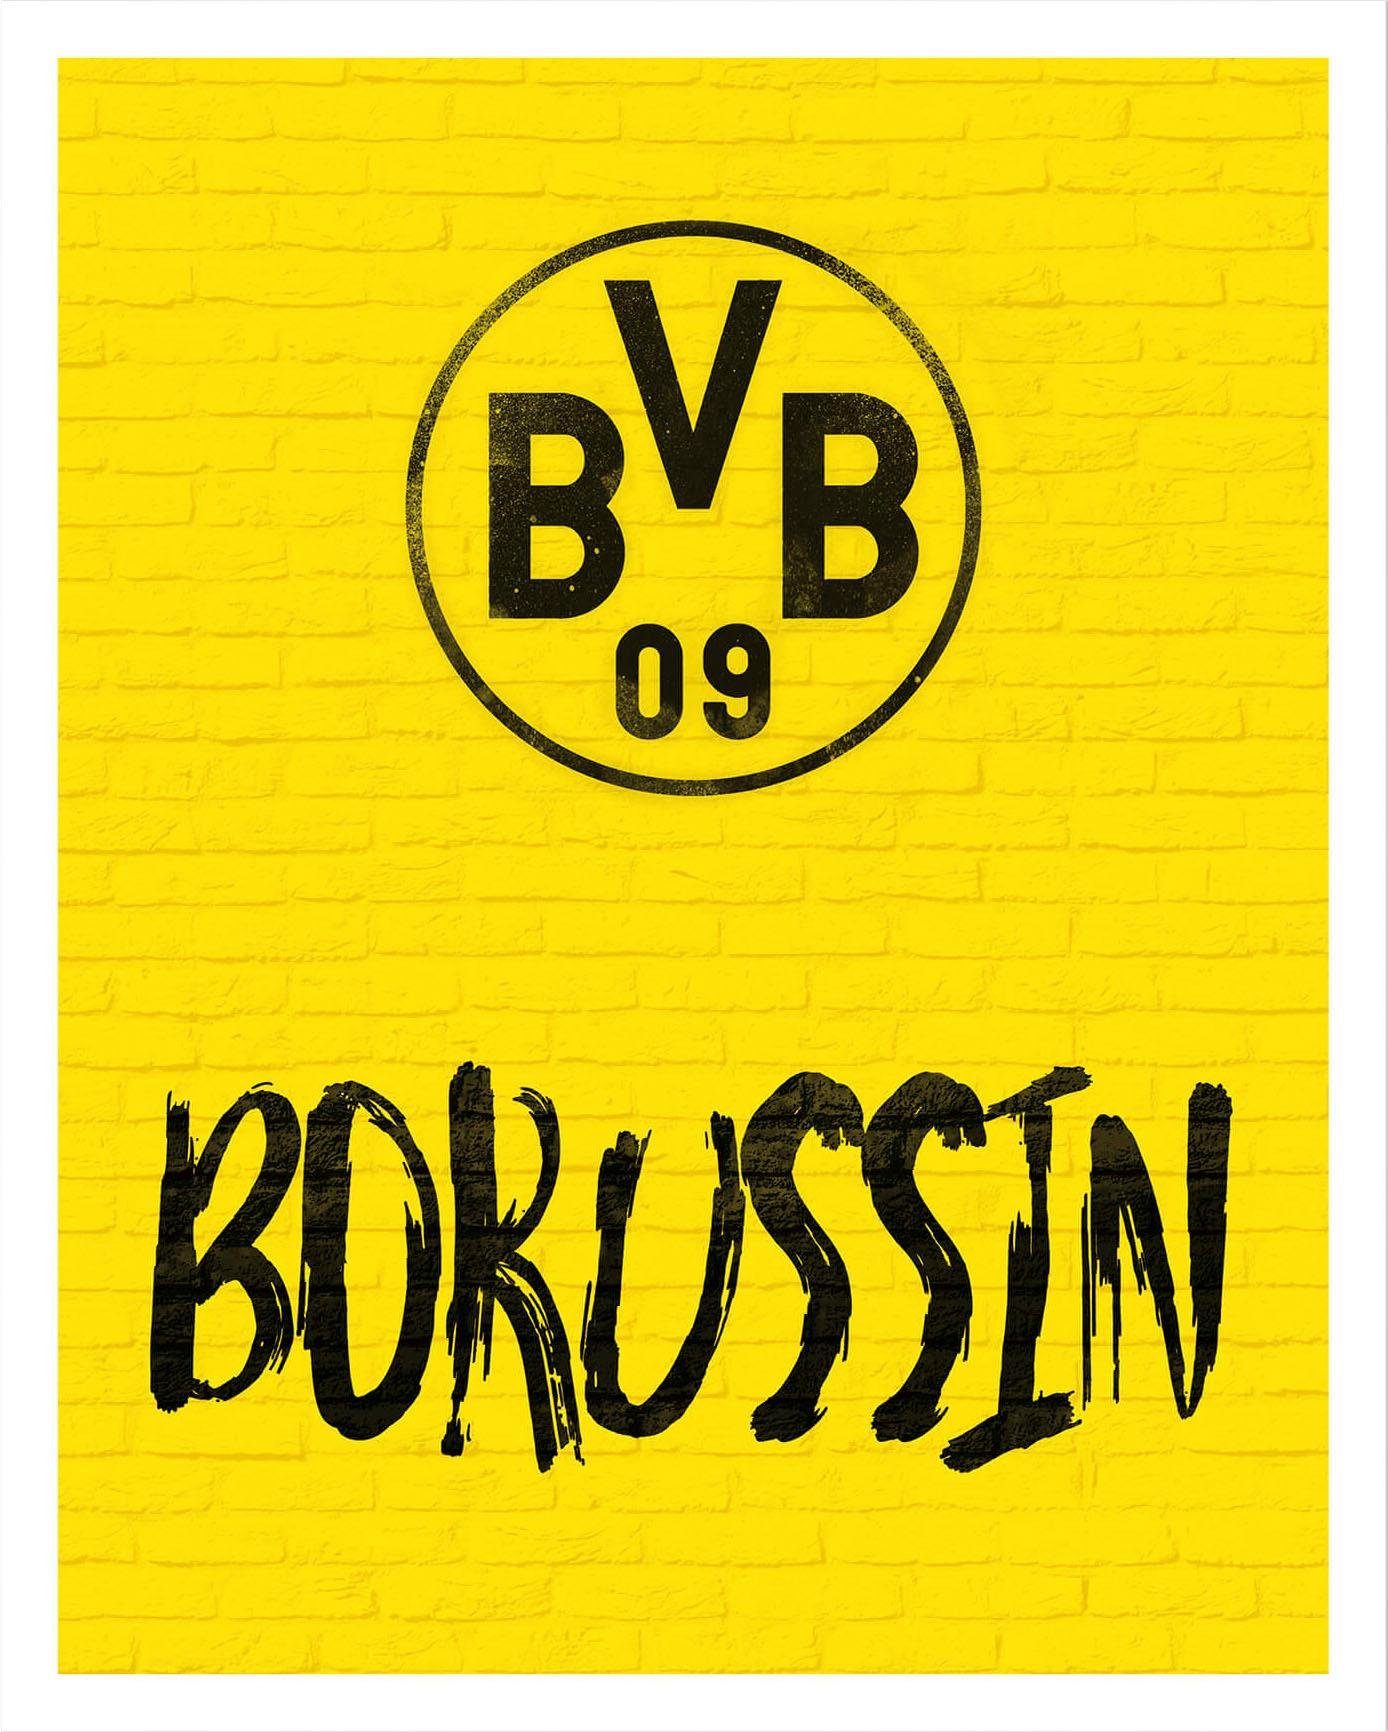 Wall-Art Wandbild, Borussin, Wandposter Poster Bild, BVB Poster,